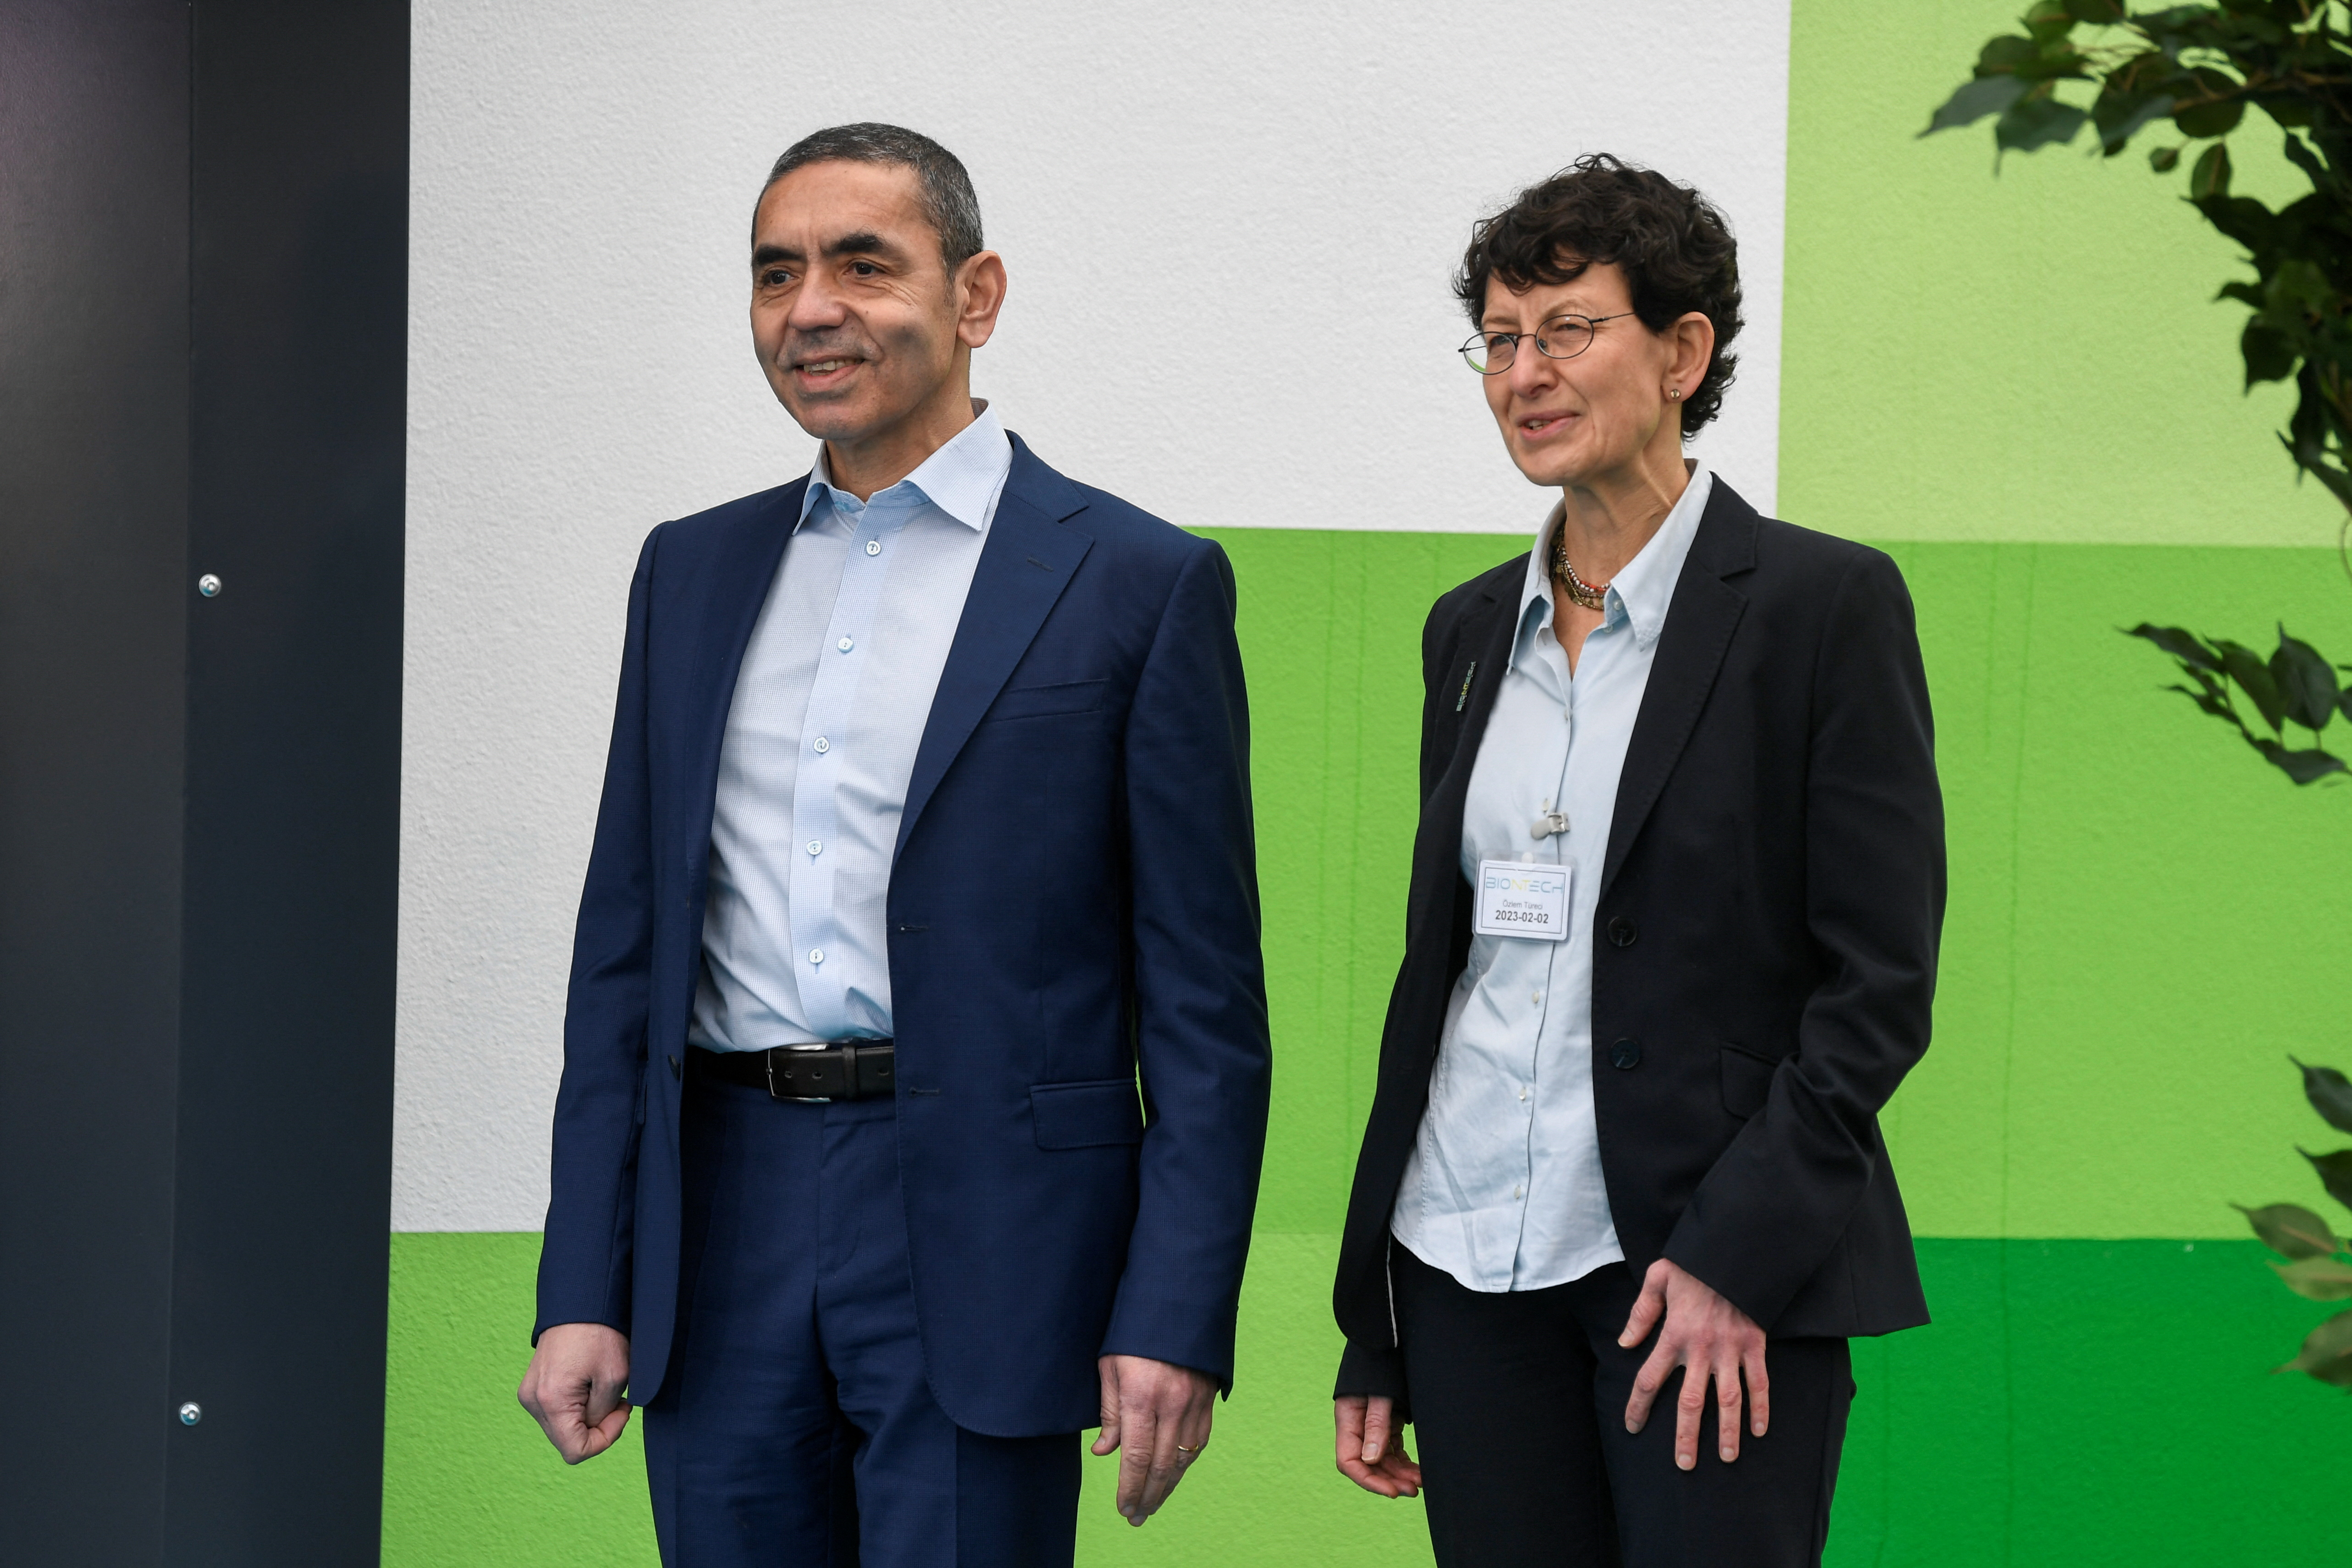 Ozlem Tureci y Ugur Sahin son los fundadores de la alemana BioNTech, empresa que se asoció a Pfizer para crear una de las vacunas más eficaces y vendidas contra COVID (REUTERS/Fabian Bimmer)